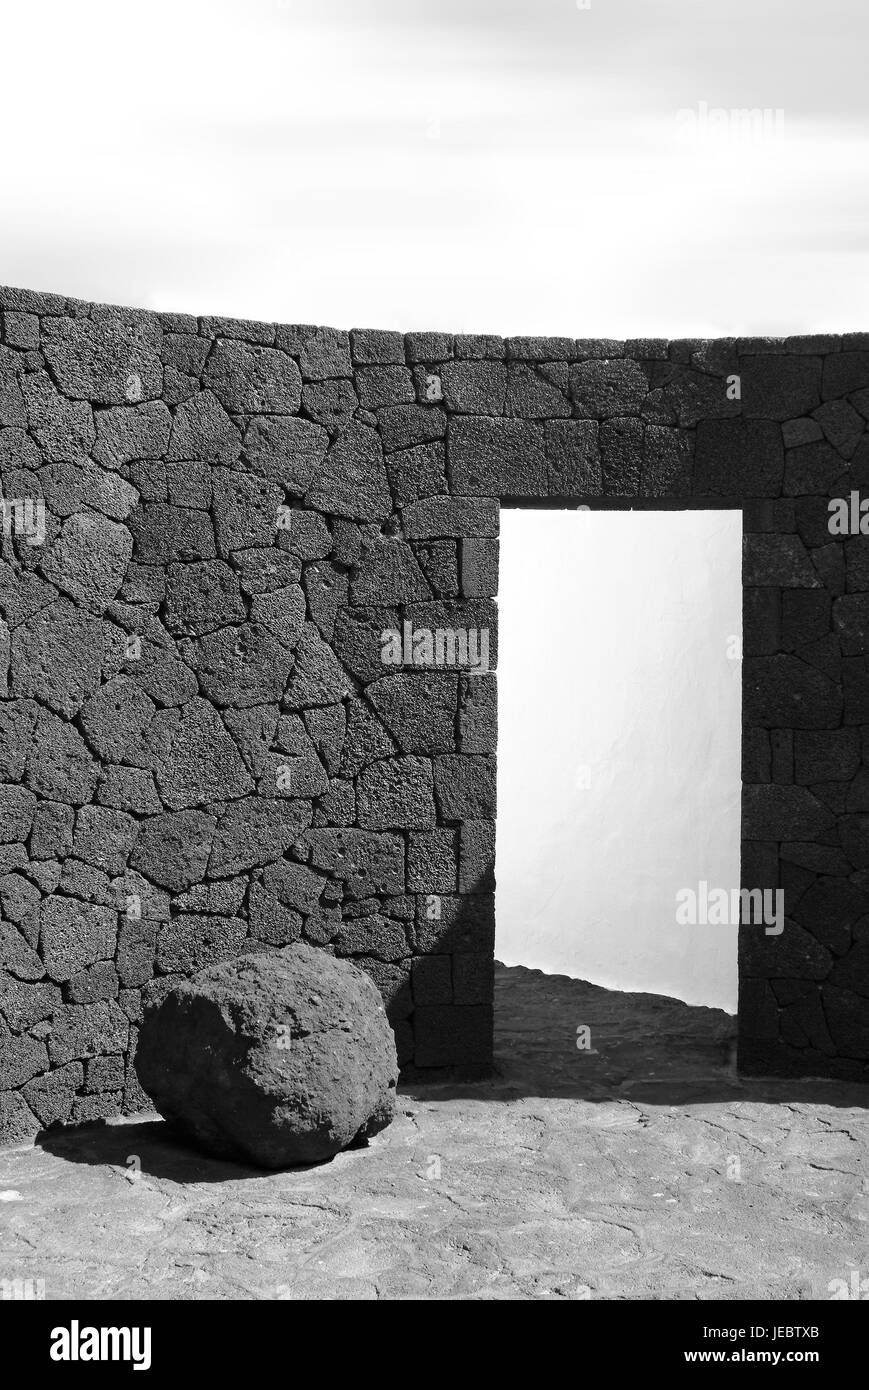 Gebäude, Lavastein, defensive Wand, Tür, Lanzarote, Kanarische Inseln, s/w, Stockfoto